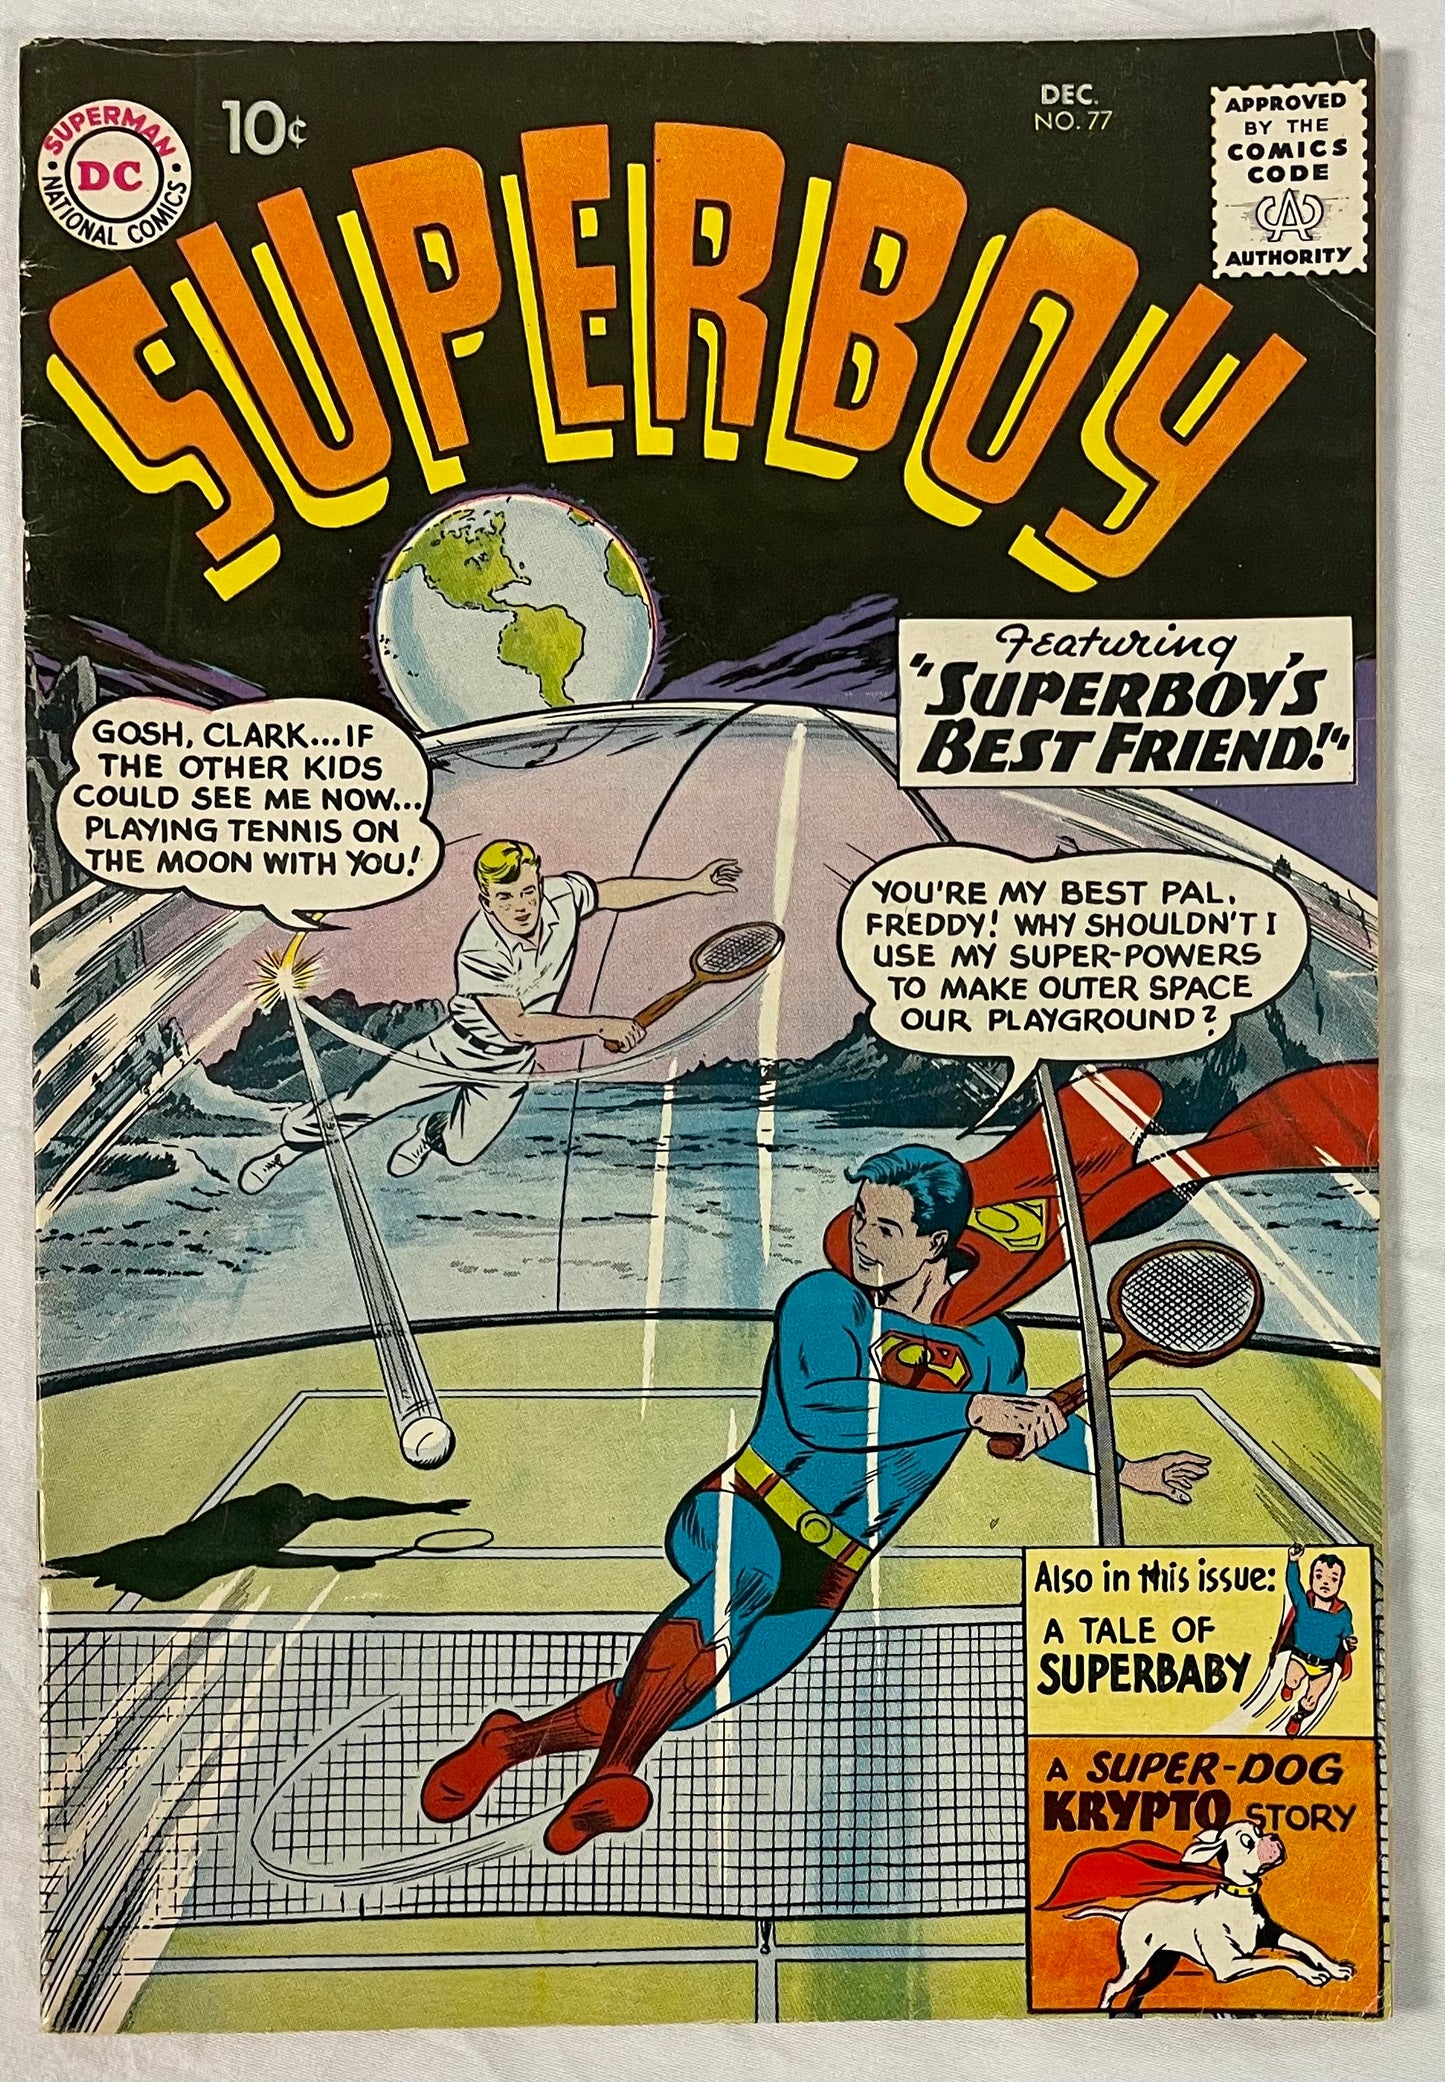 DC Comics Superboy No. 77